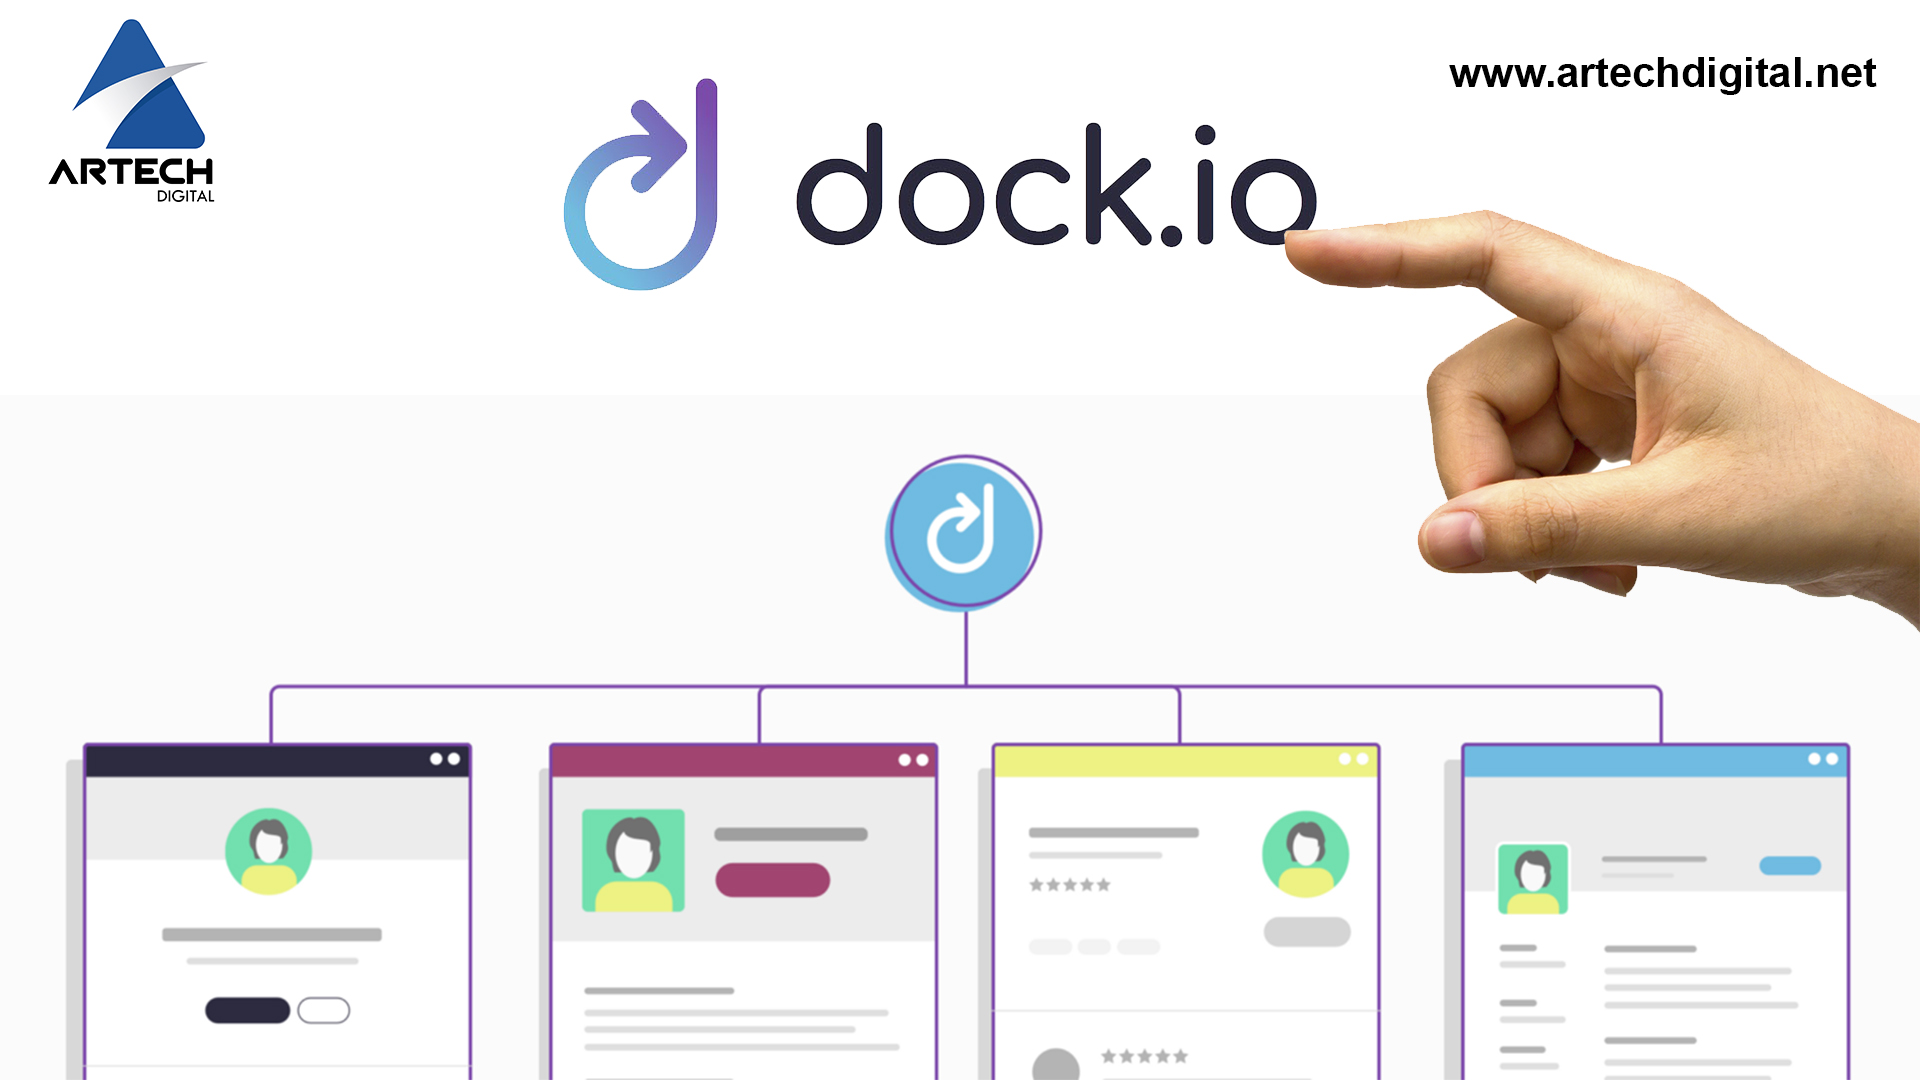 Dock, de la mano de la tecnología blockchain, llega a las redes sociales